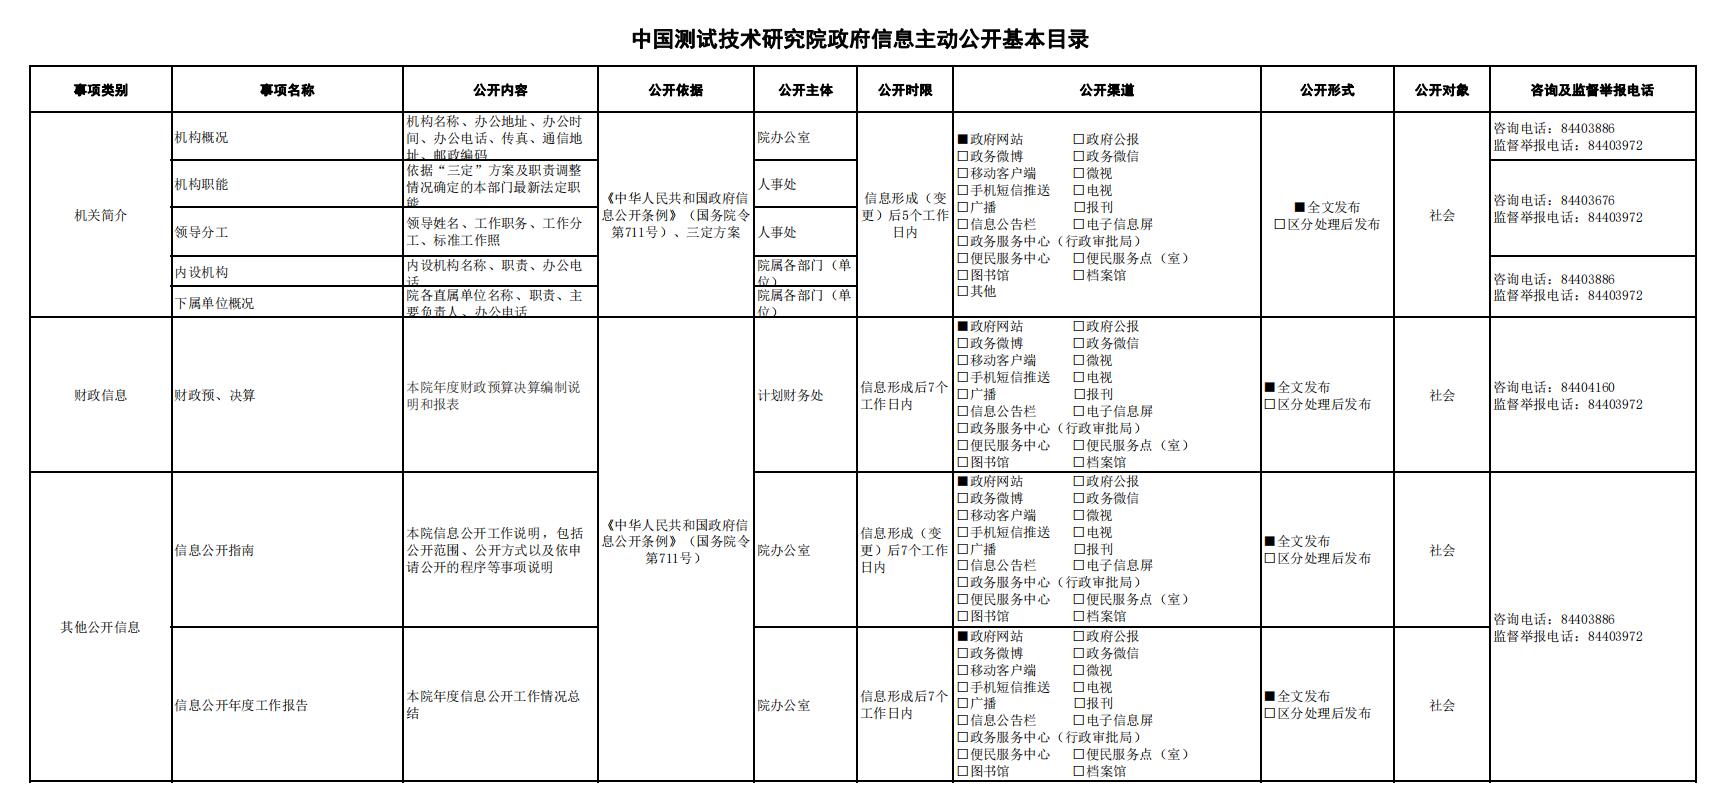 中国测试技术研究院政府信息公开目录.jpg